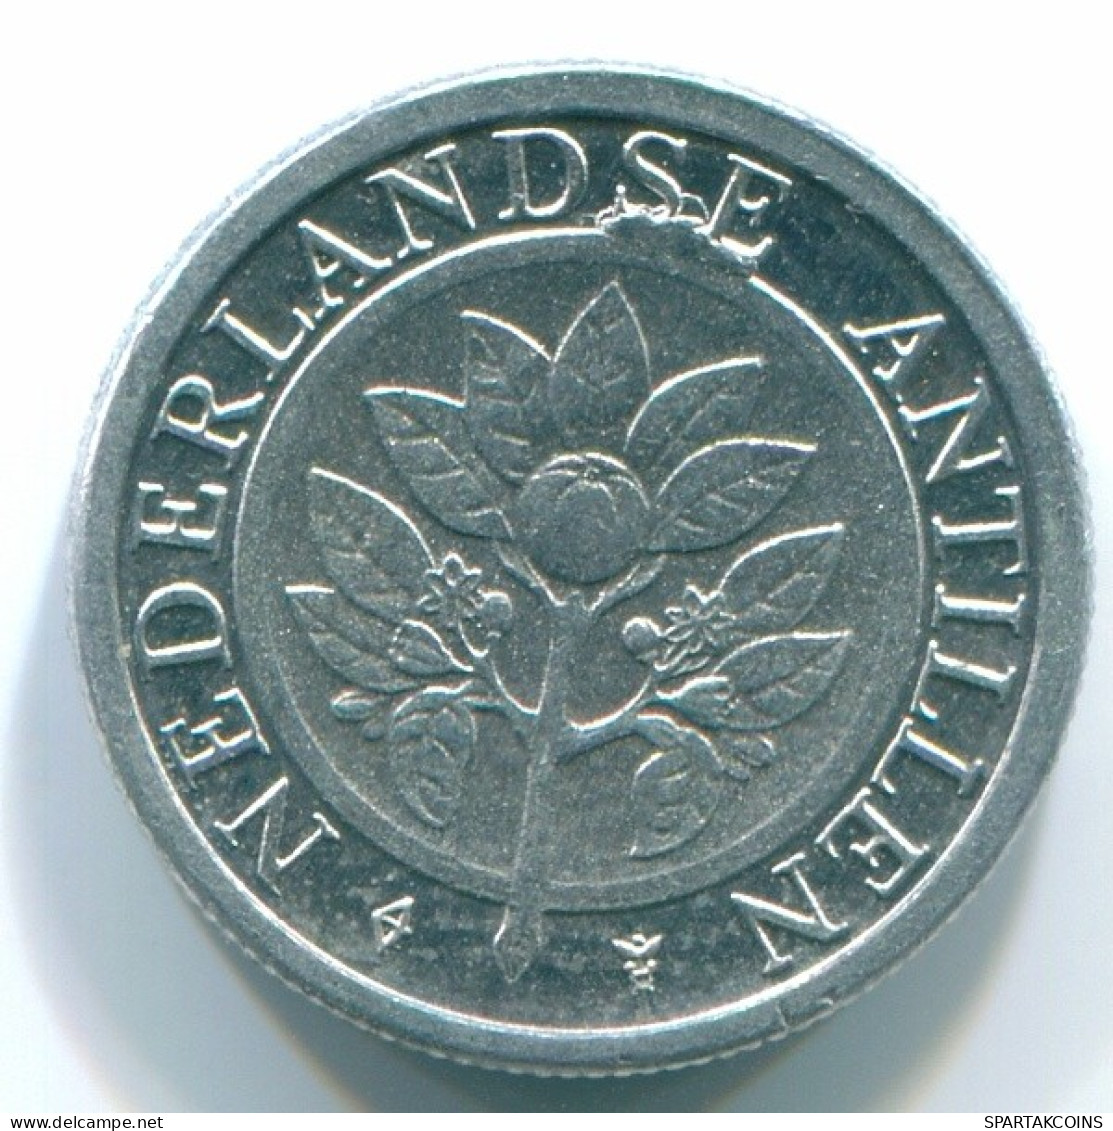 1 CENT 1996 NETHERLANDS ANTILLES Aluminium Colonial Coin #S13151.U.A - Niederländische Antillen